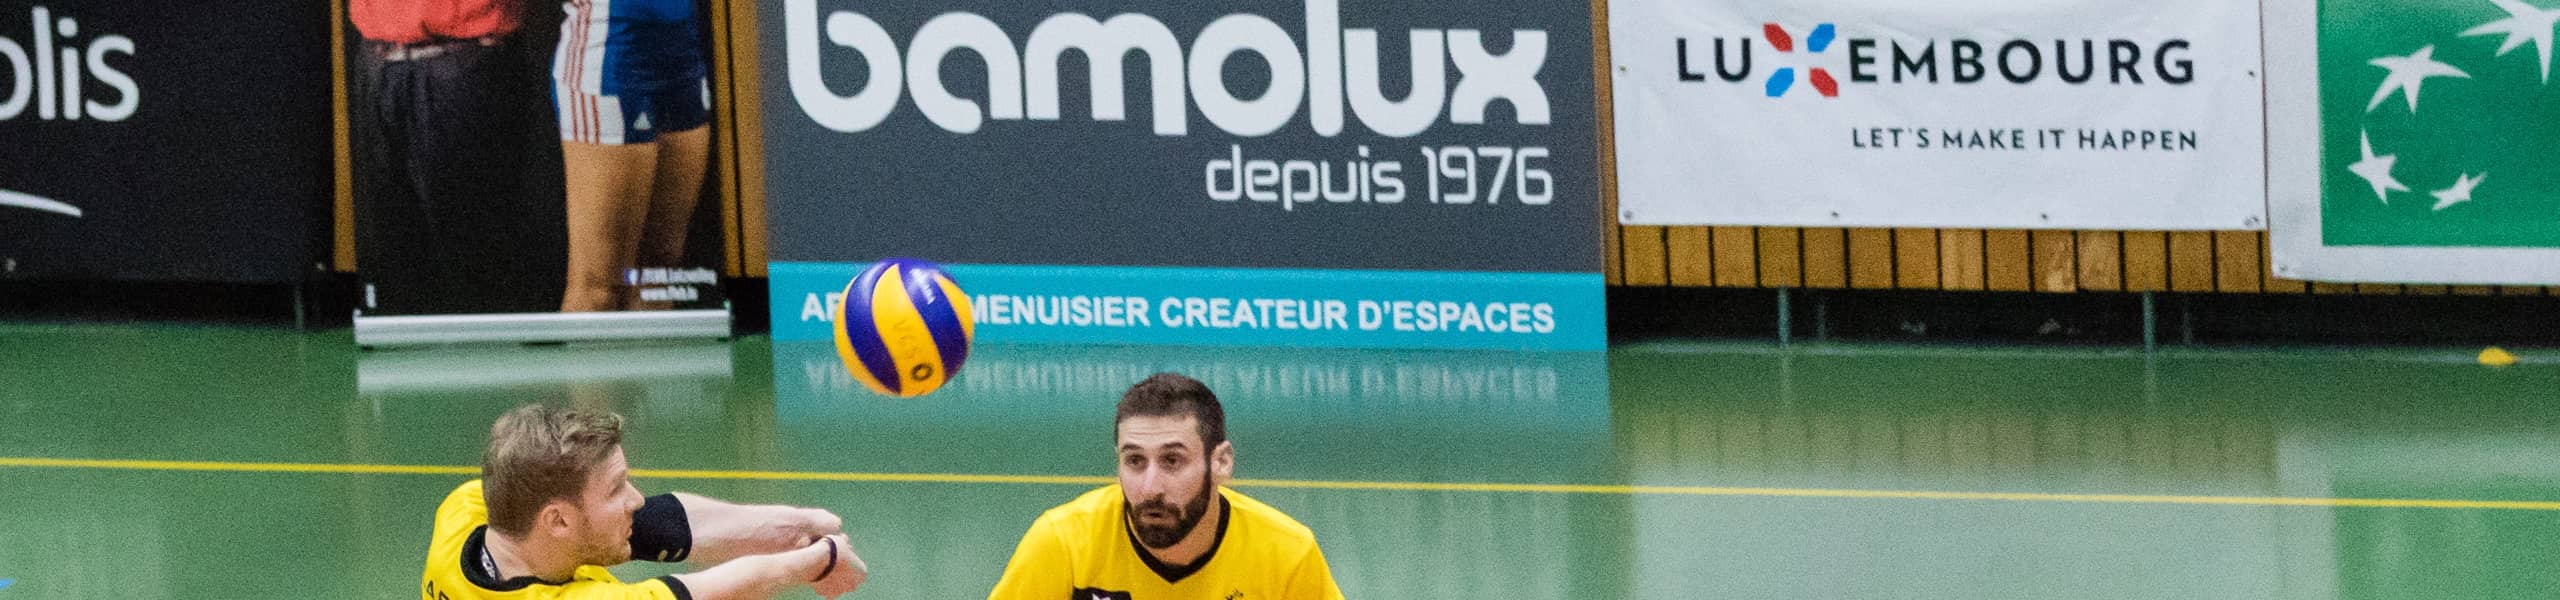 Photo pour illustrer les sponsoring. Deux joueurs du Volley Club Strassen envoilent la balle avec panneau sponsor Bamolux en fond.